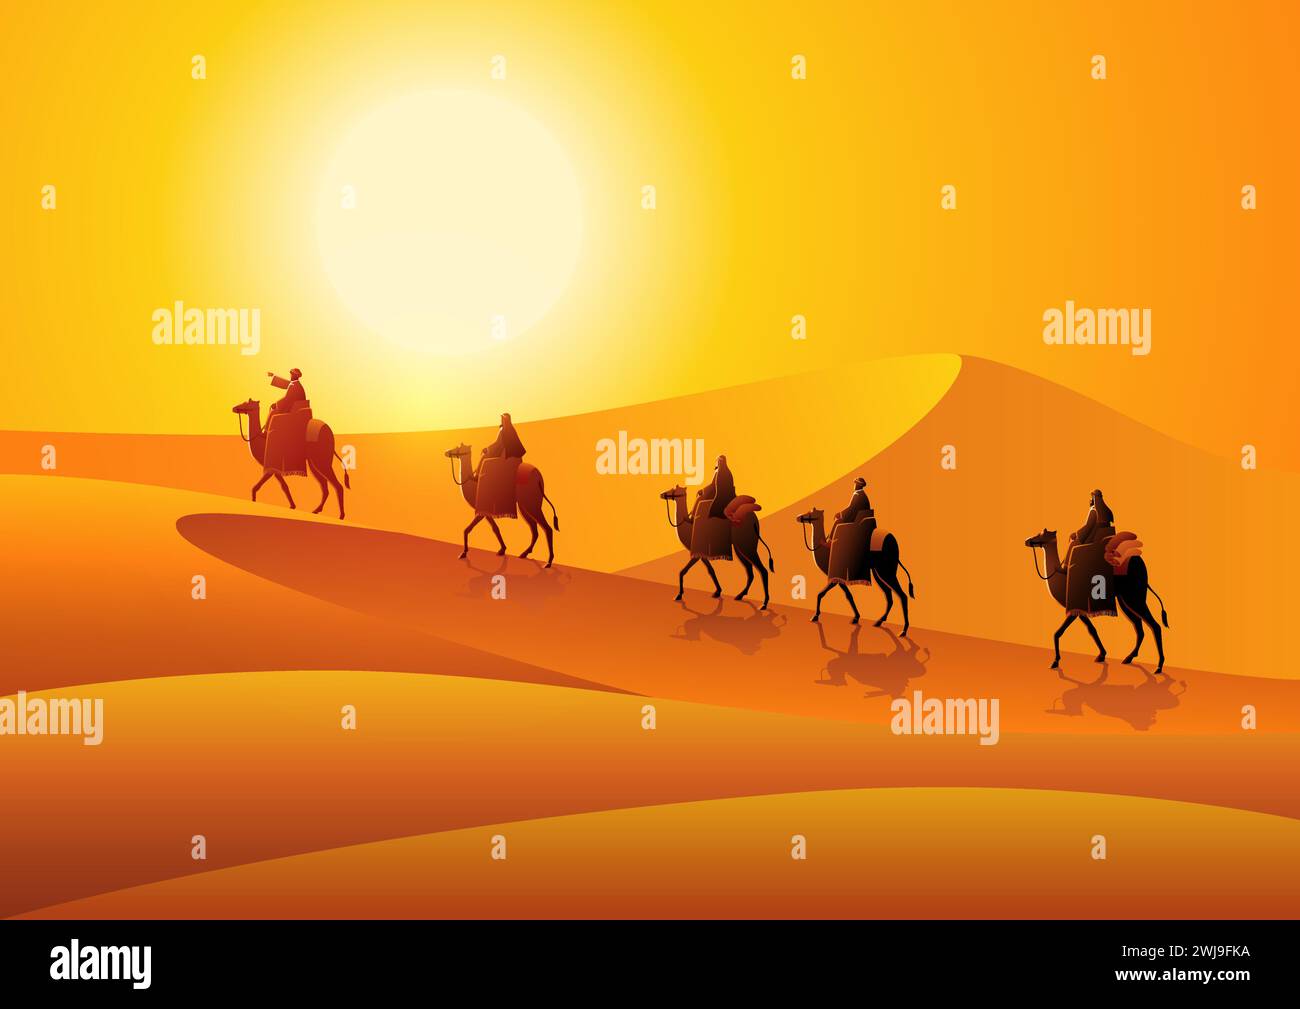 Illustration vectorielle de commerçants arabes chevauchant des chameaux dans le désert chaud, route de la soie du désert de Gobi Illustration de Vecteur